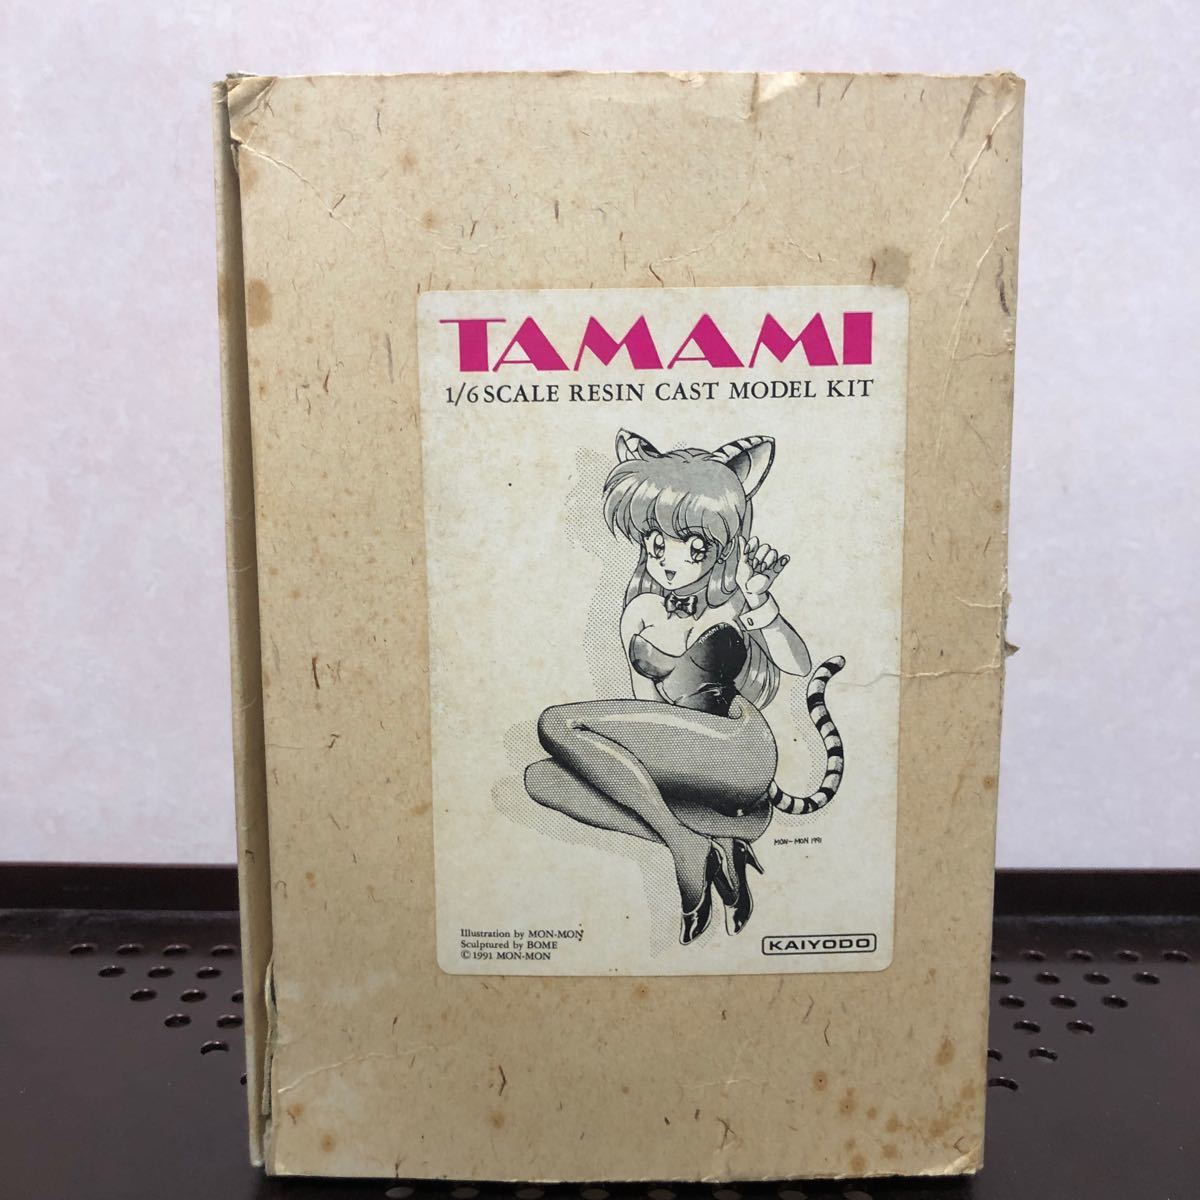 498 未組立 TAMAMI タマミ 海洋堂 ボーメ ガレージキット レジンキット レジンキャスト フィギュア 模型 ネコミミ_画像1